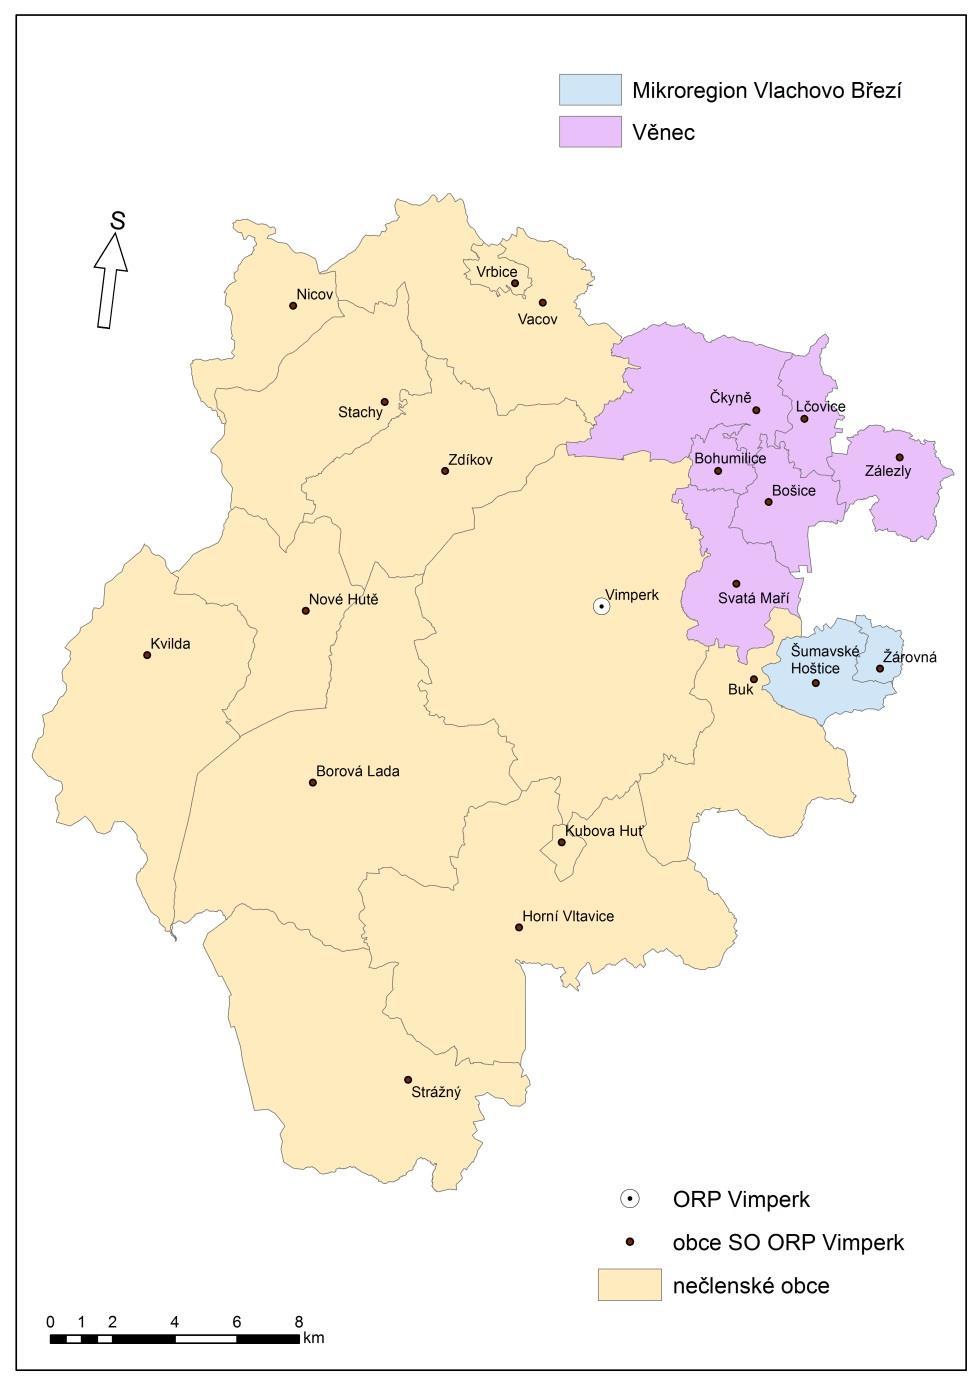 2 Souhrnná zpráva za všechny DSO v území Ve správním obvodu ORP Vimperk působí dva dobrovolné svazky obcí (Věnec a Mikroregion